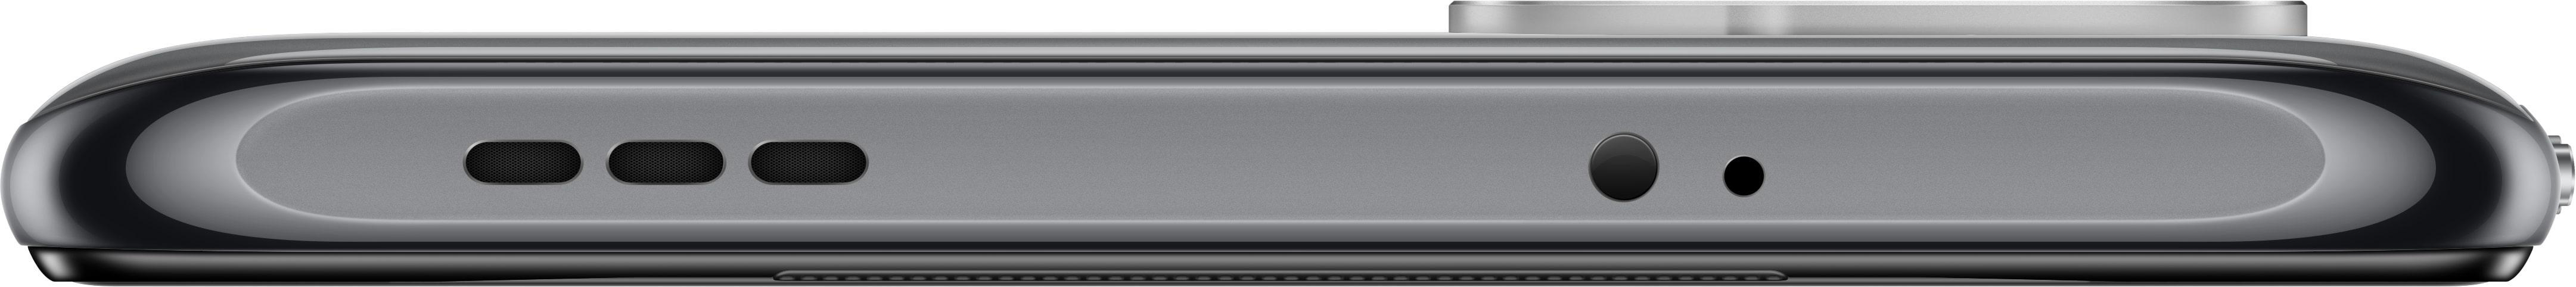 XIAOMI Redmi Note Onyx Gray SIM 10S 128 GB Dual